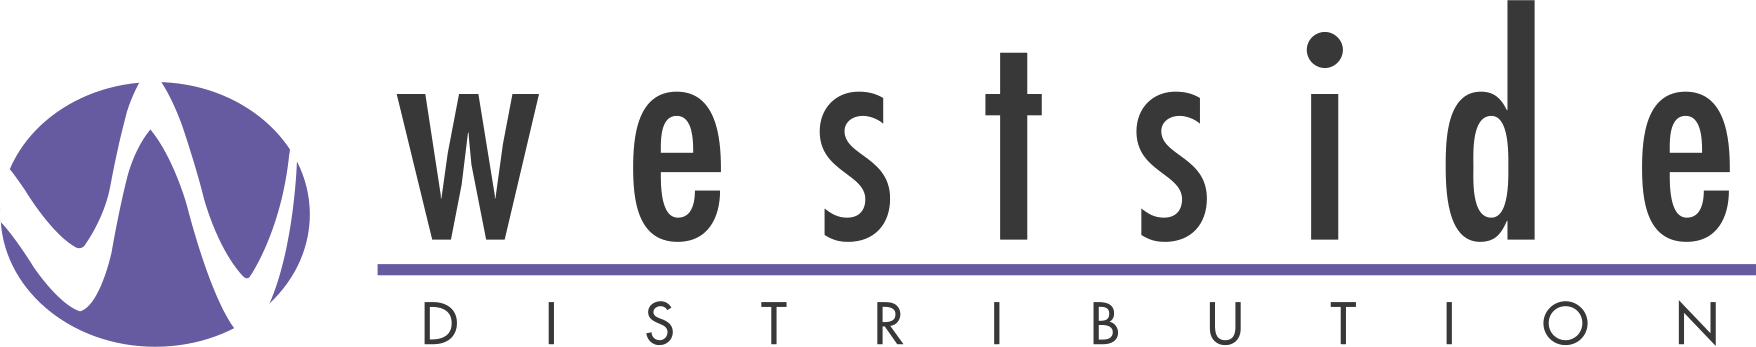 Westside Logo - Westside Logo Transparent